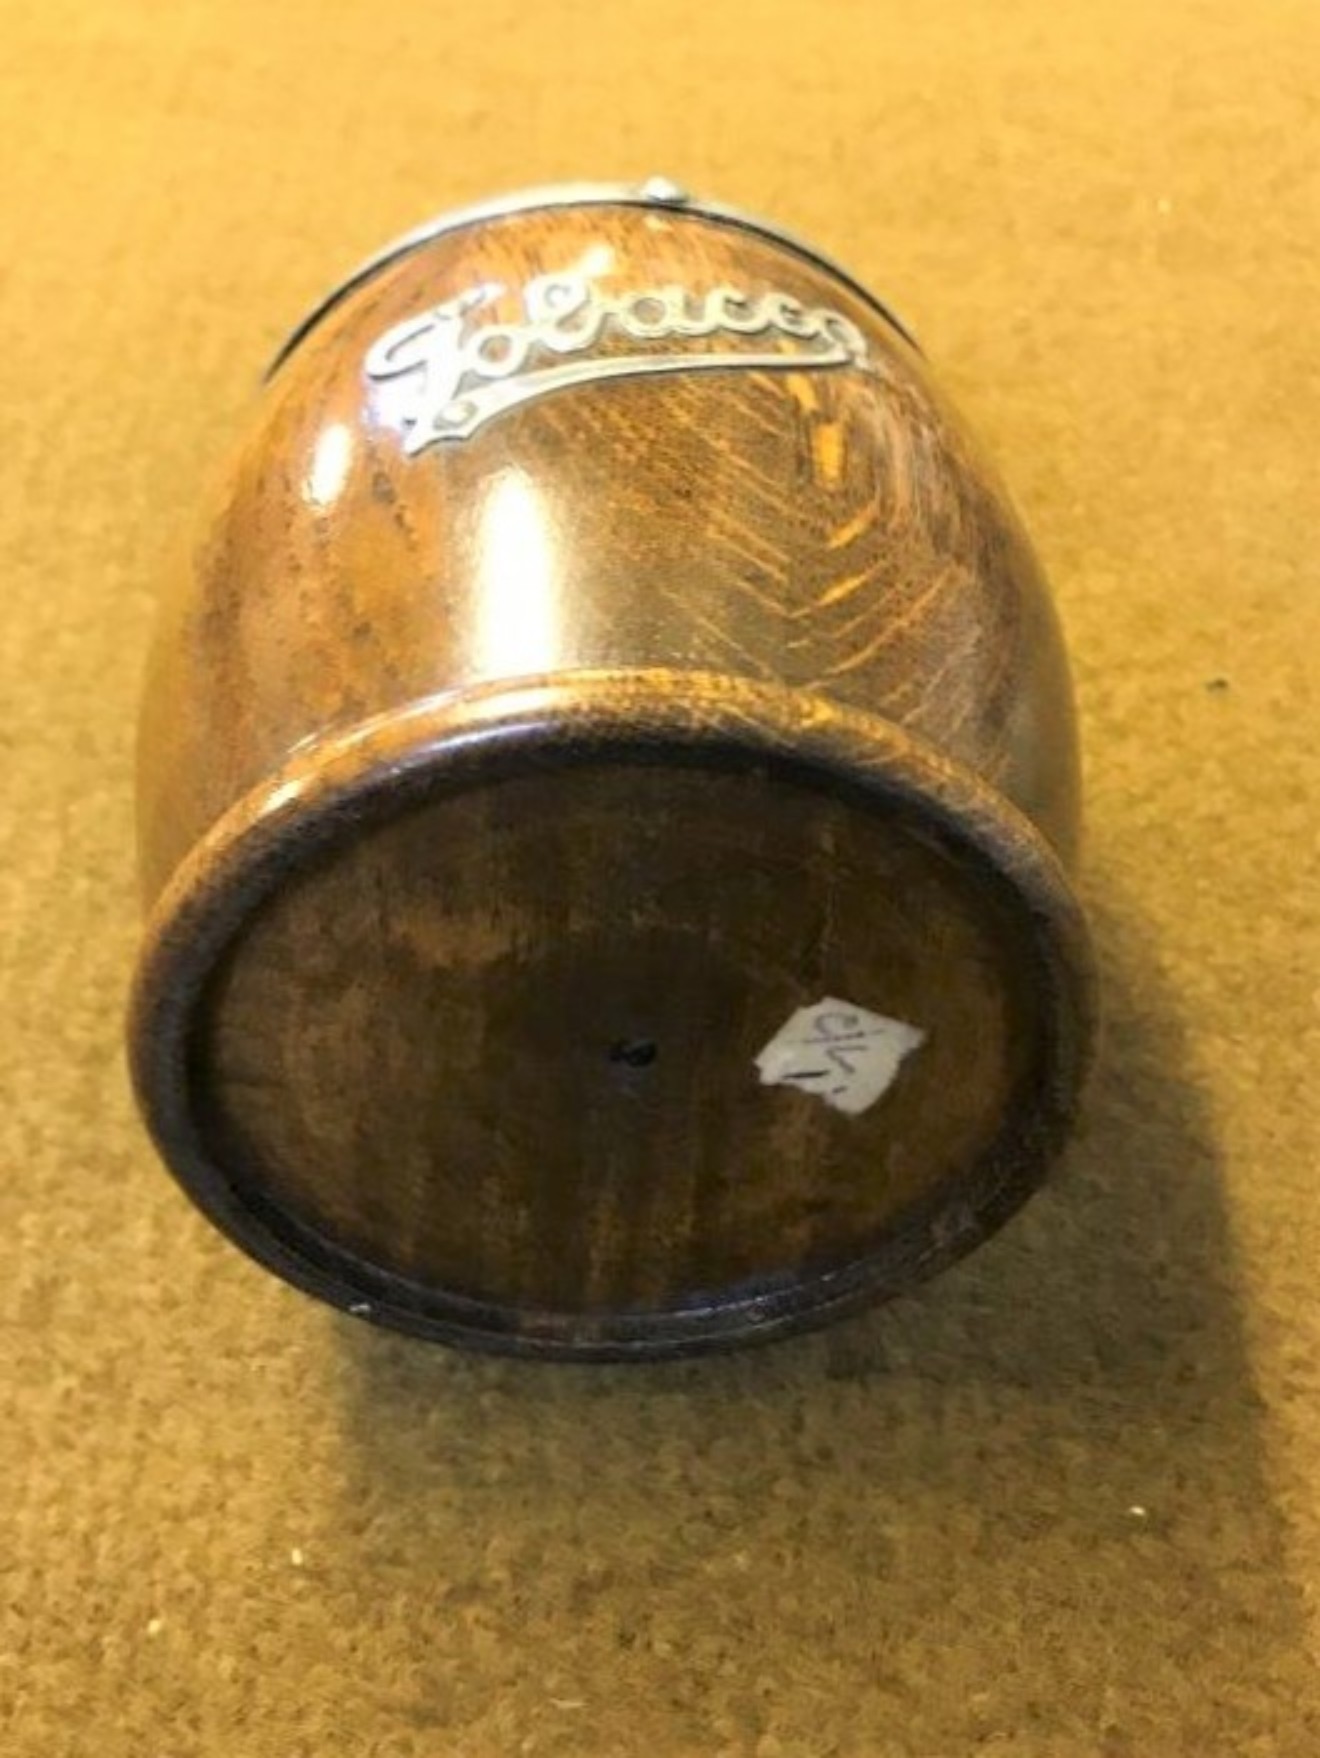 Round Wooden Tobacco Box